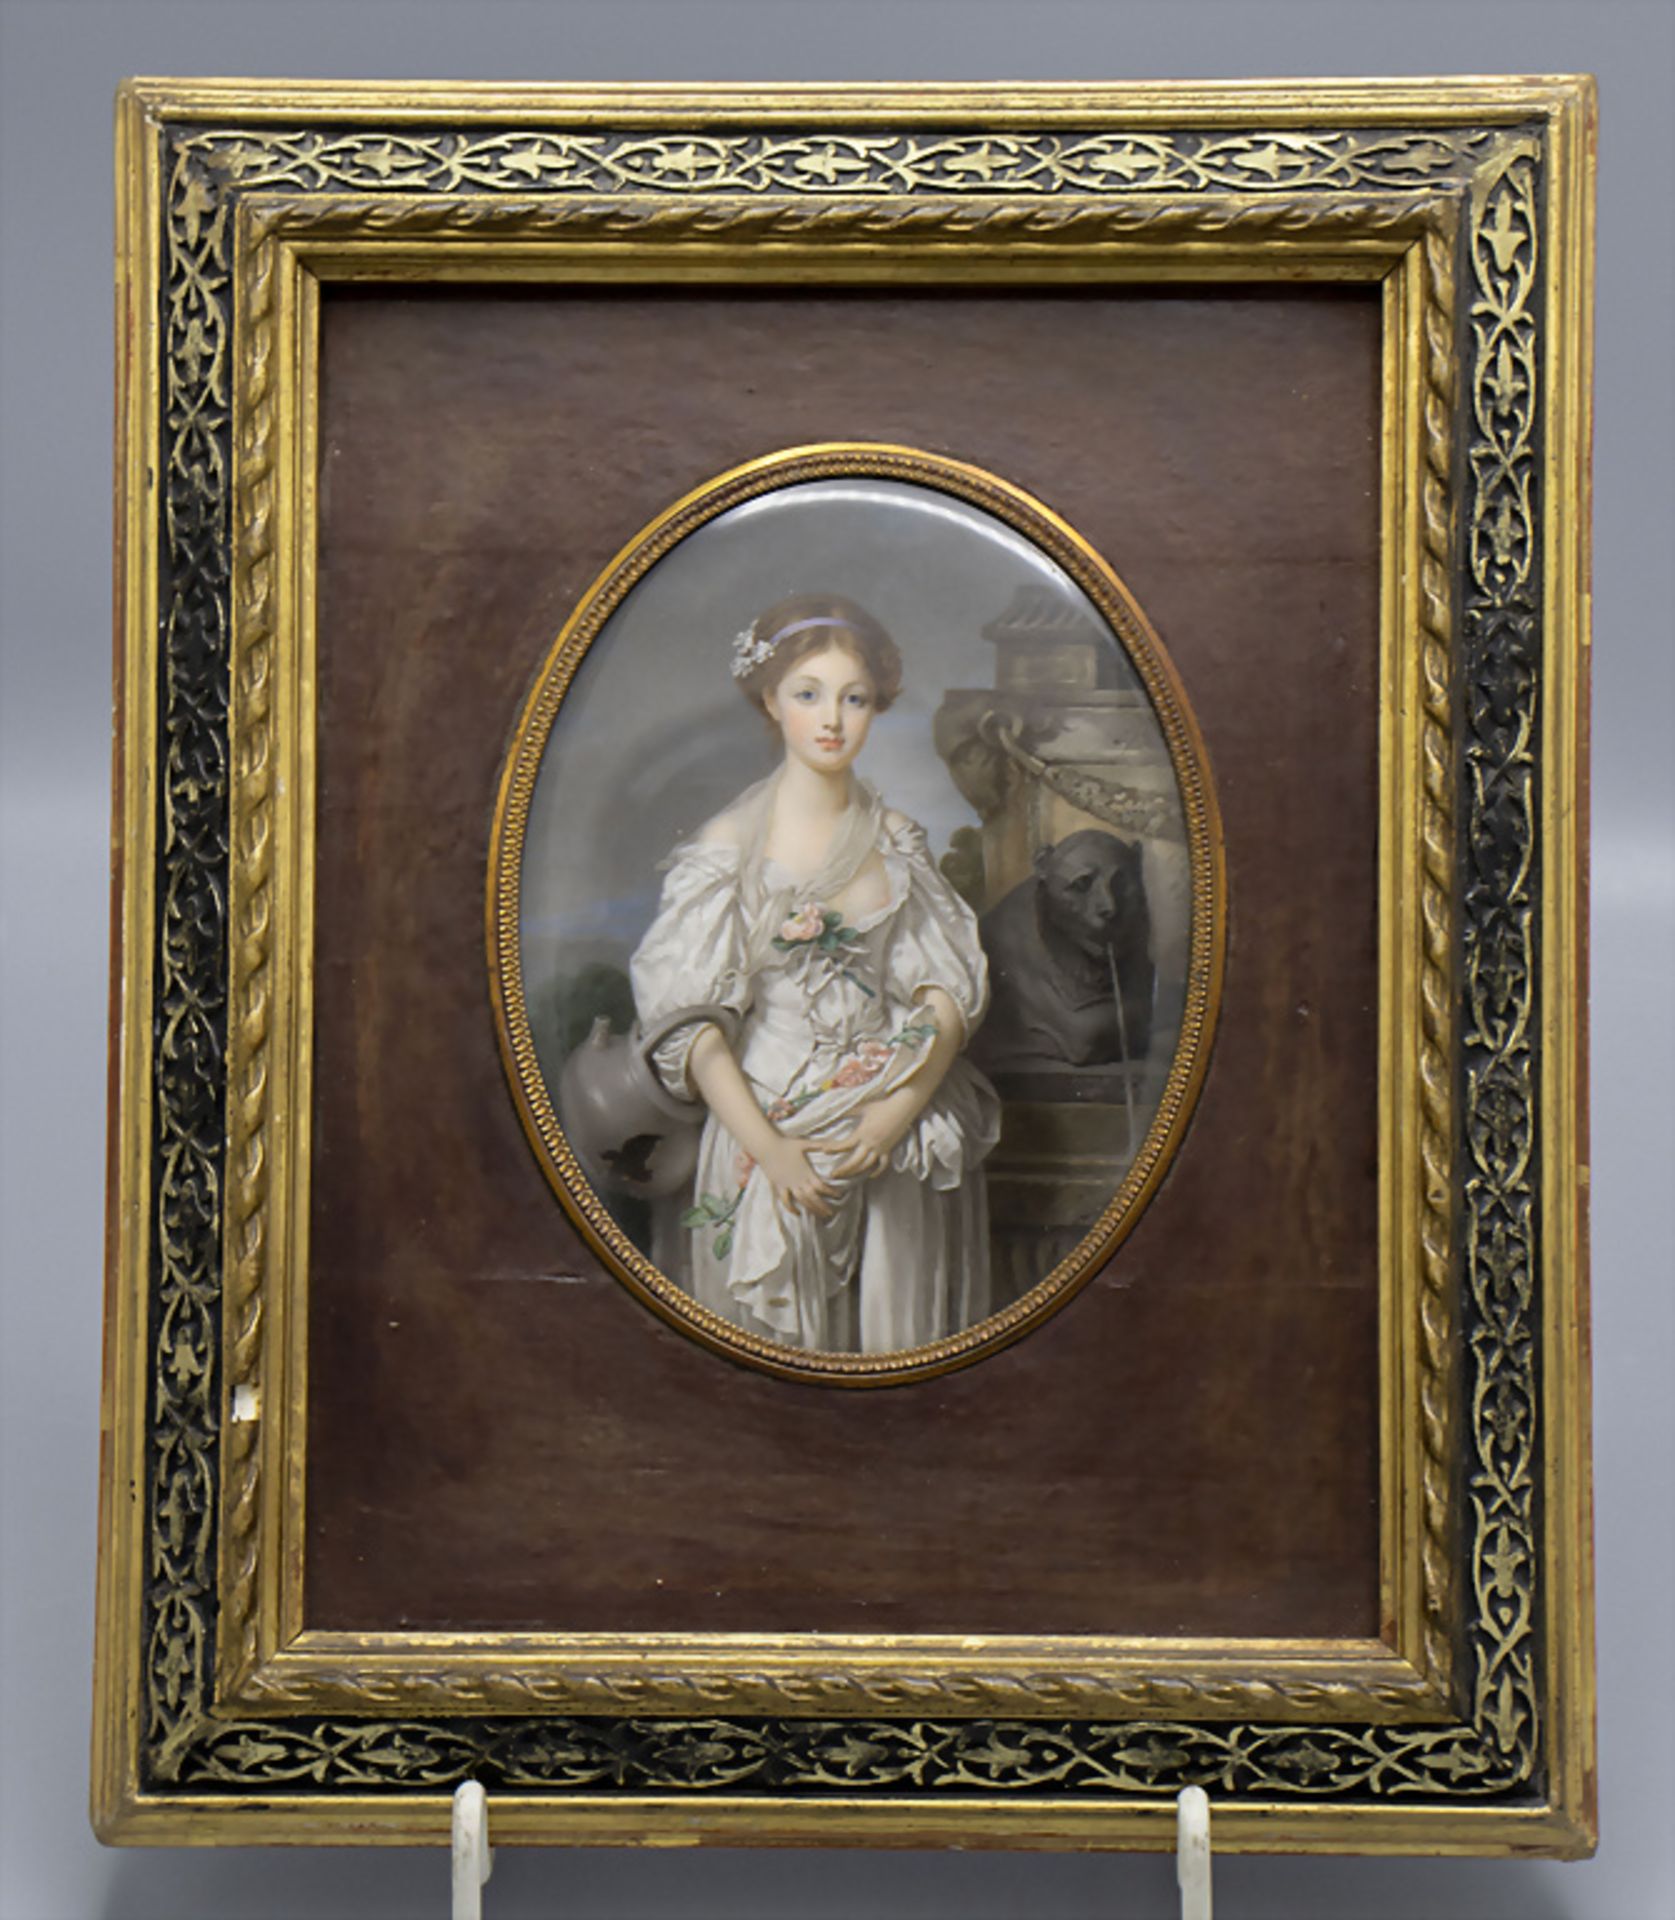 John Jules NIMMO, ca. 1830-1890, Der zerbrochene Henkelkrug, nach Jean Baptiste Greuze, 1881 - Bild 2 aus 6